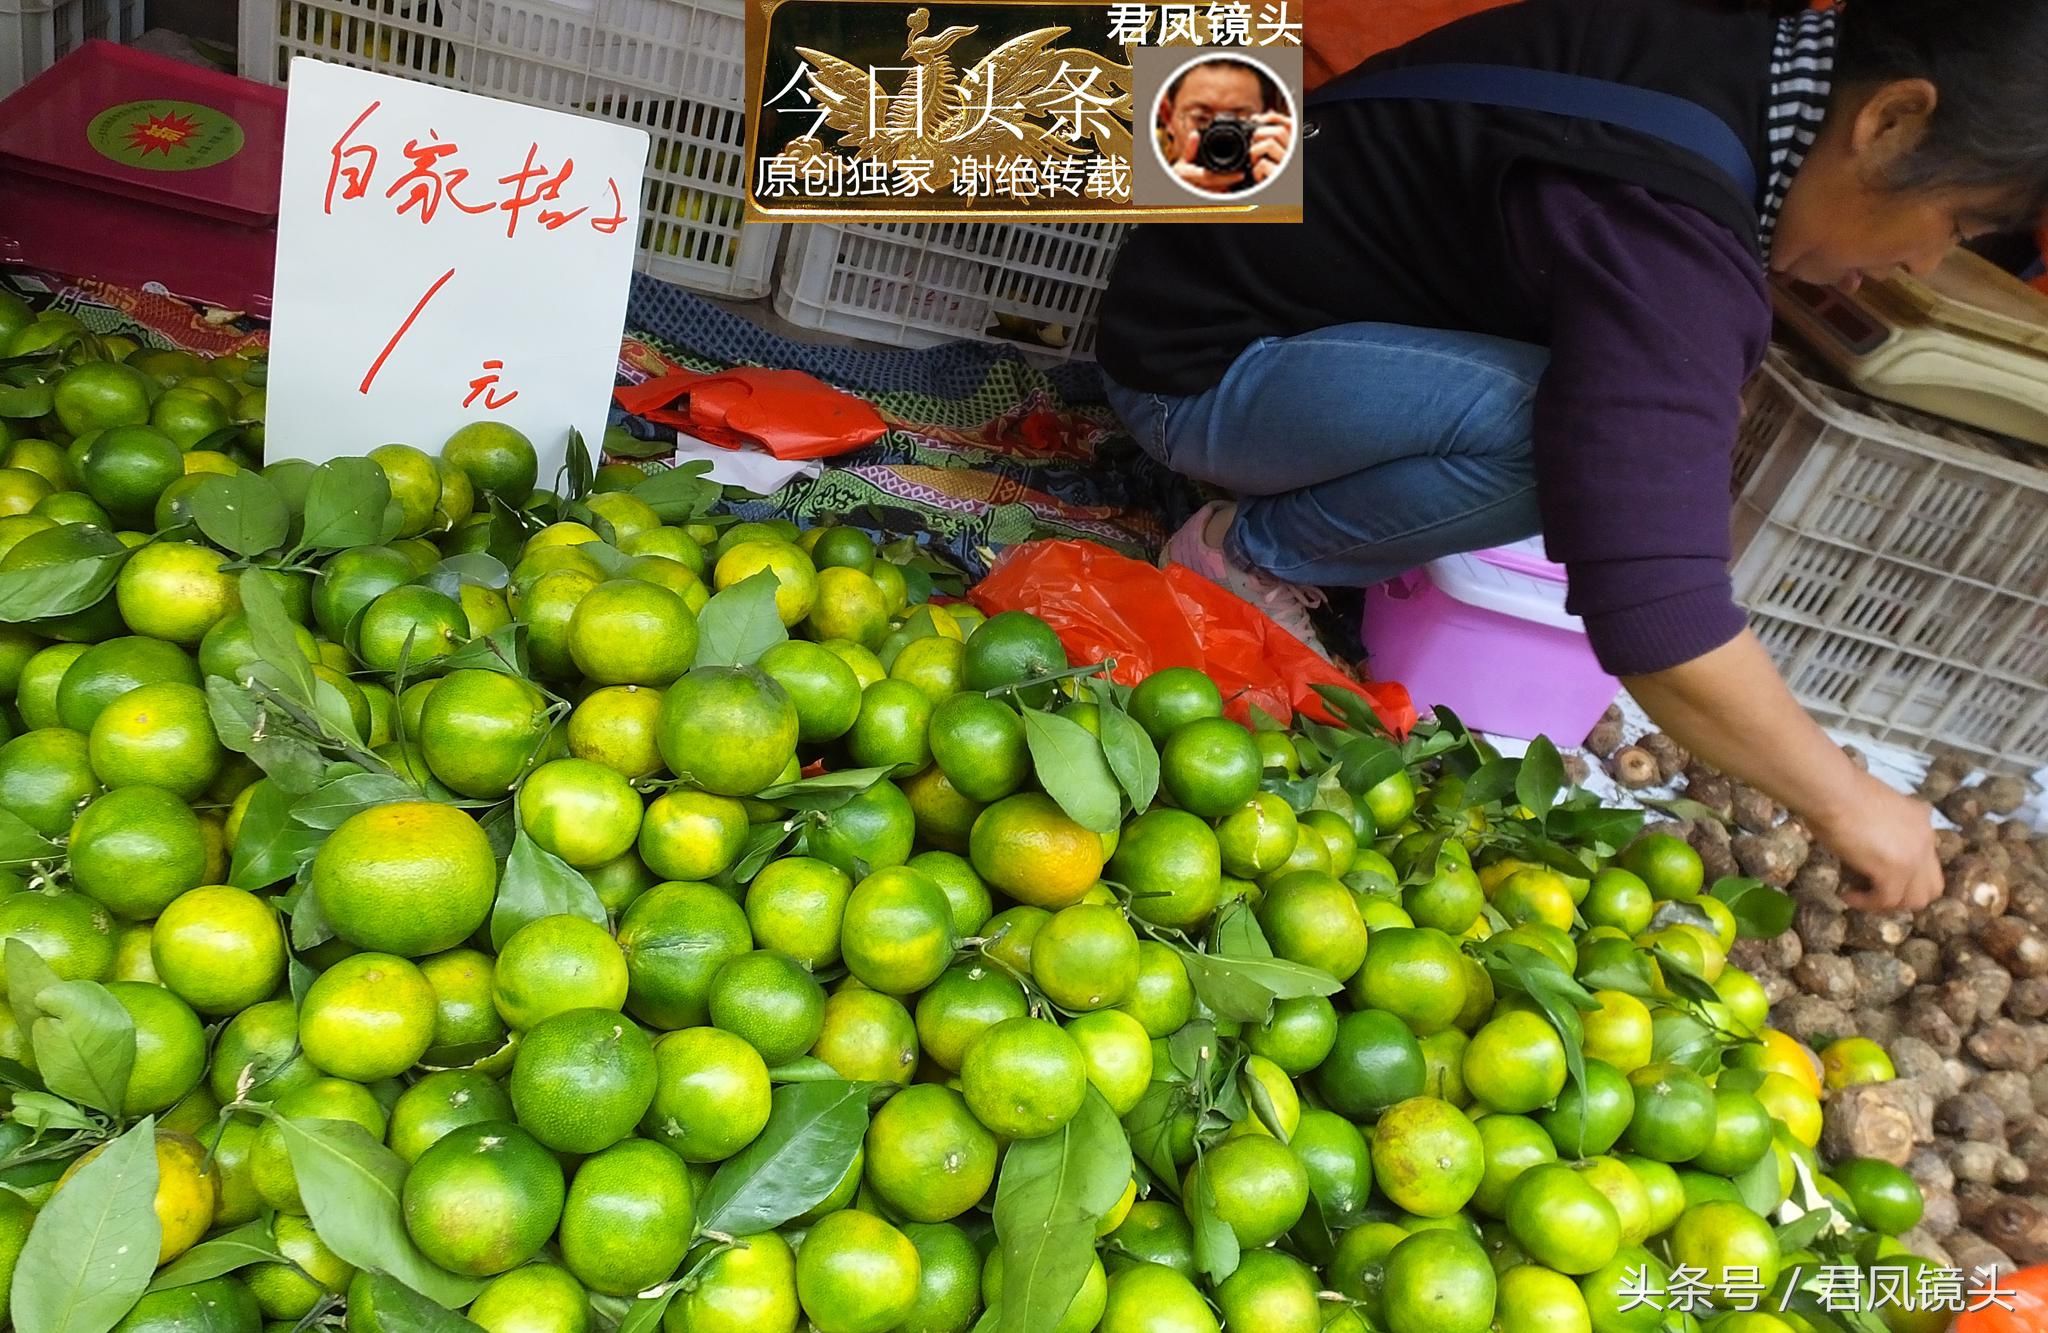 湖北宜昌:葛洲坝菜市场,农民种植的柑橘售价1